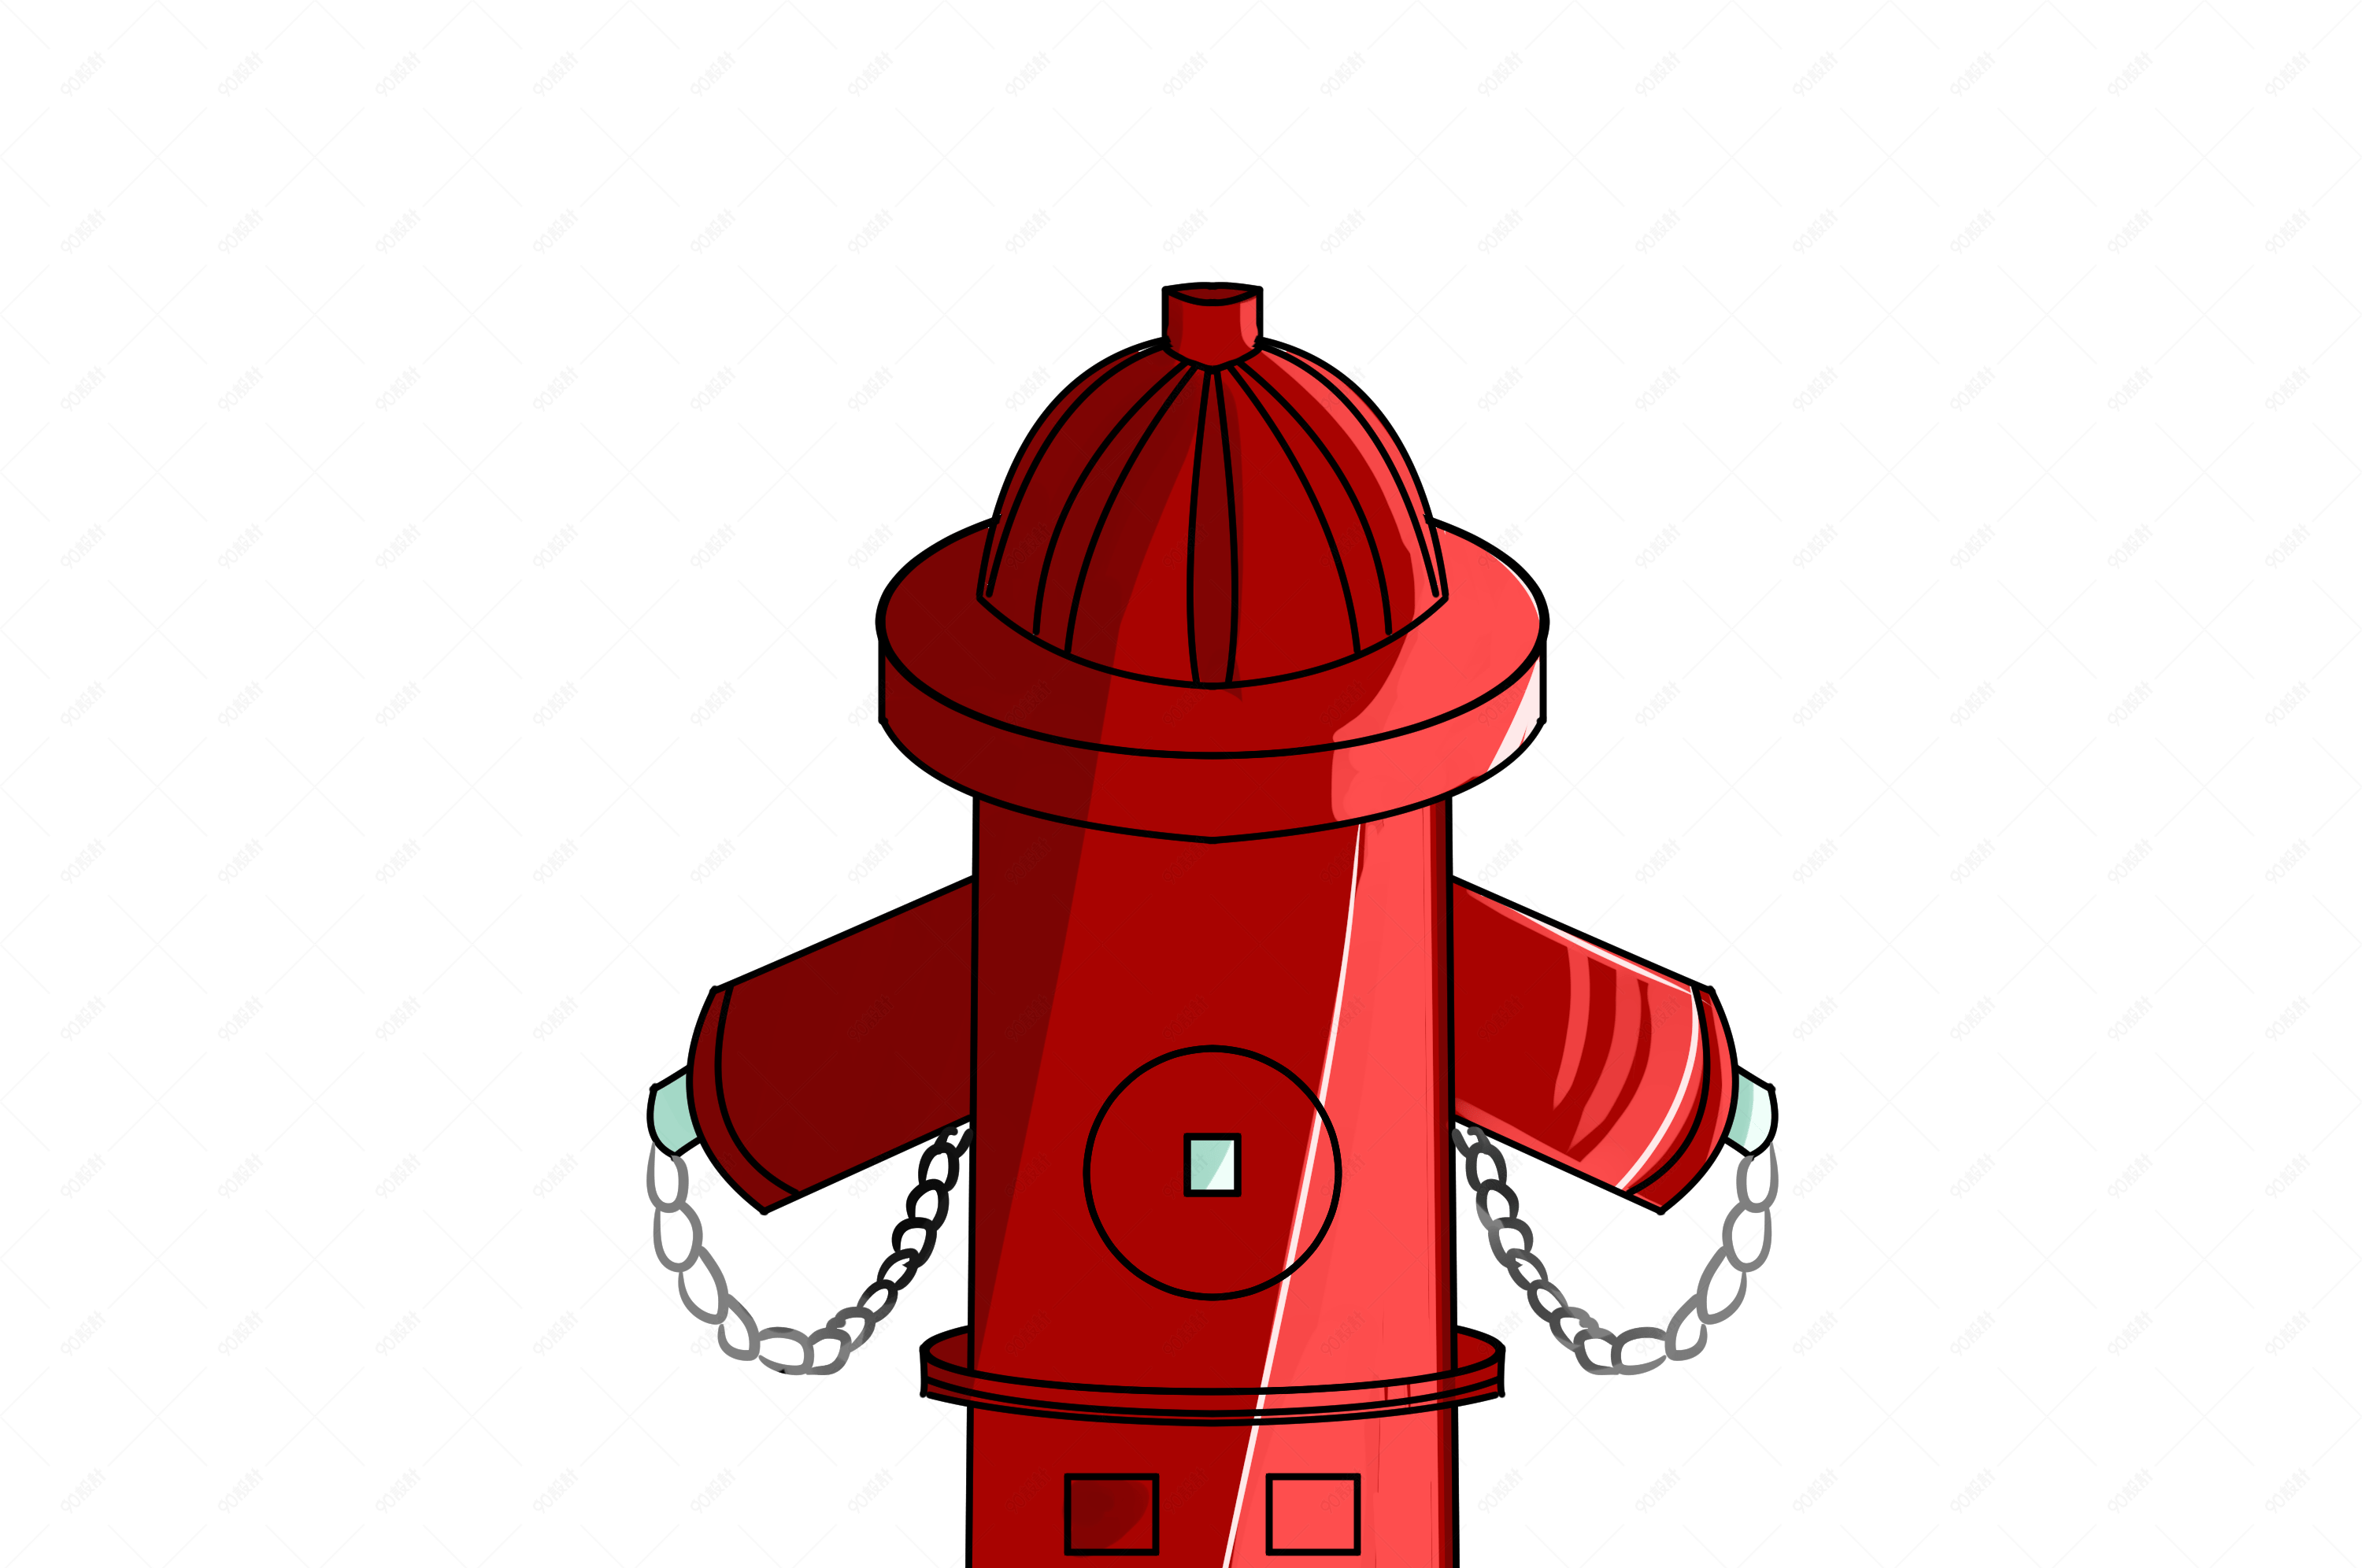 消防栓简笔画可爱图片